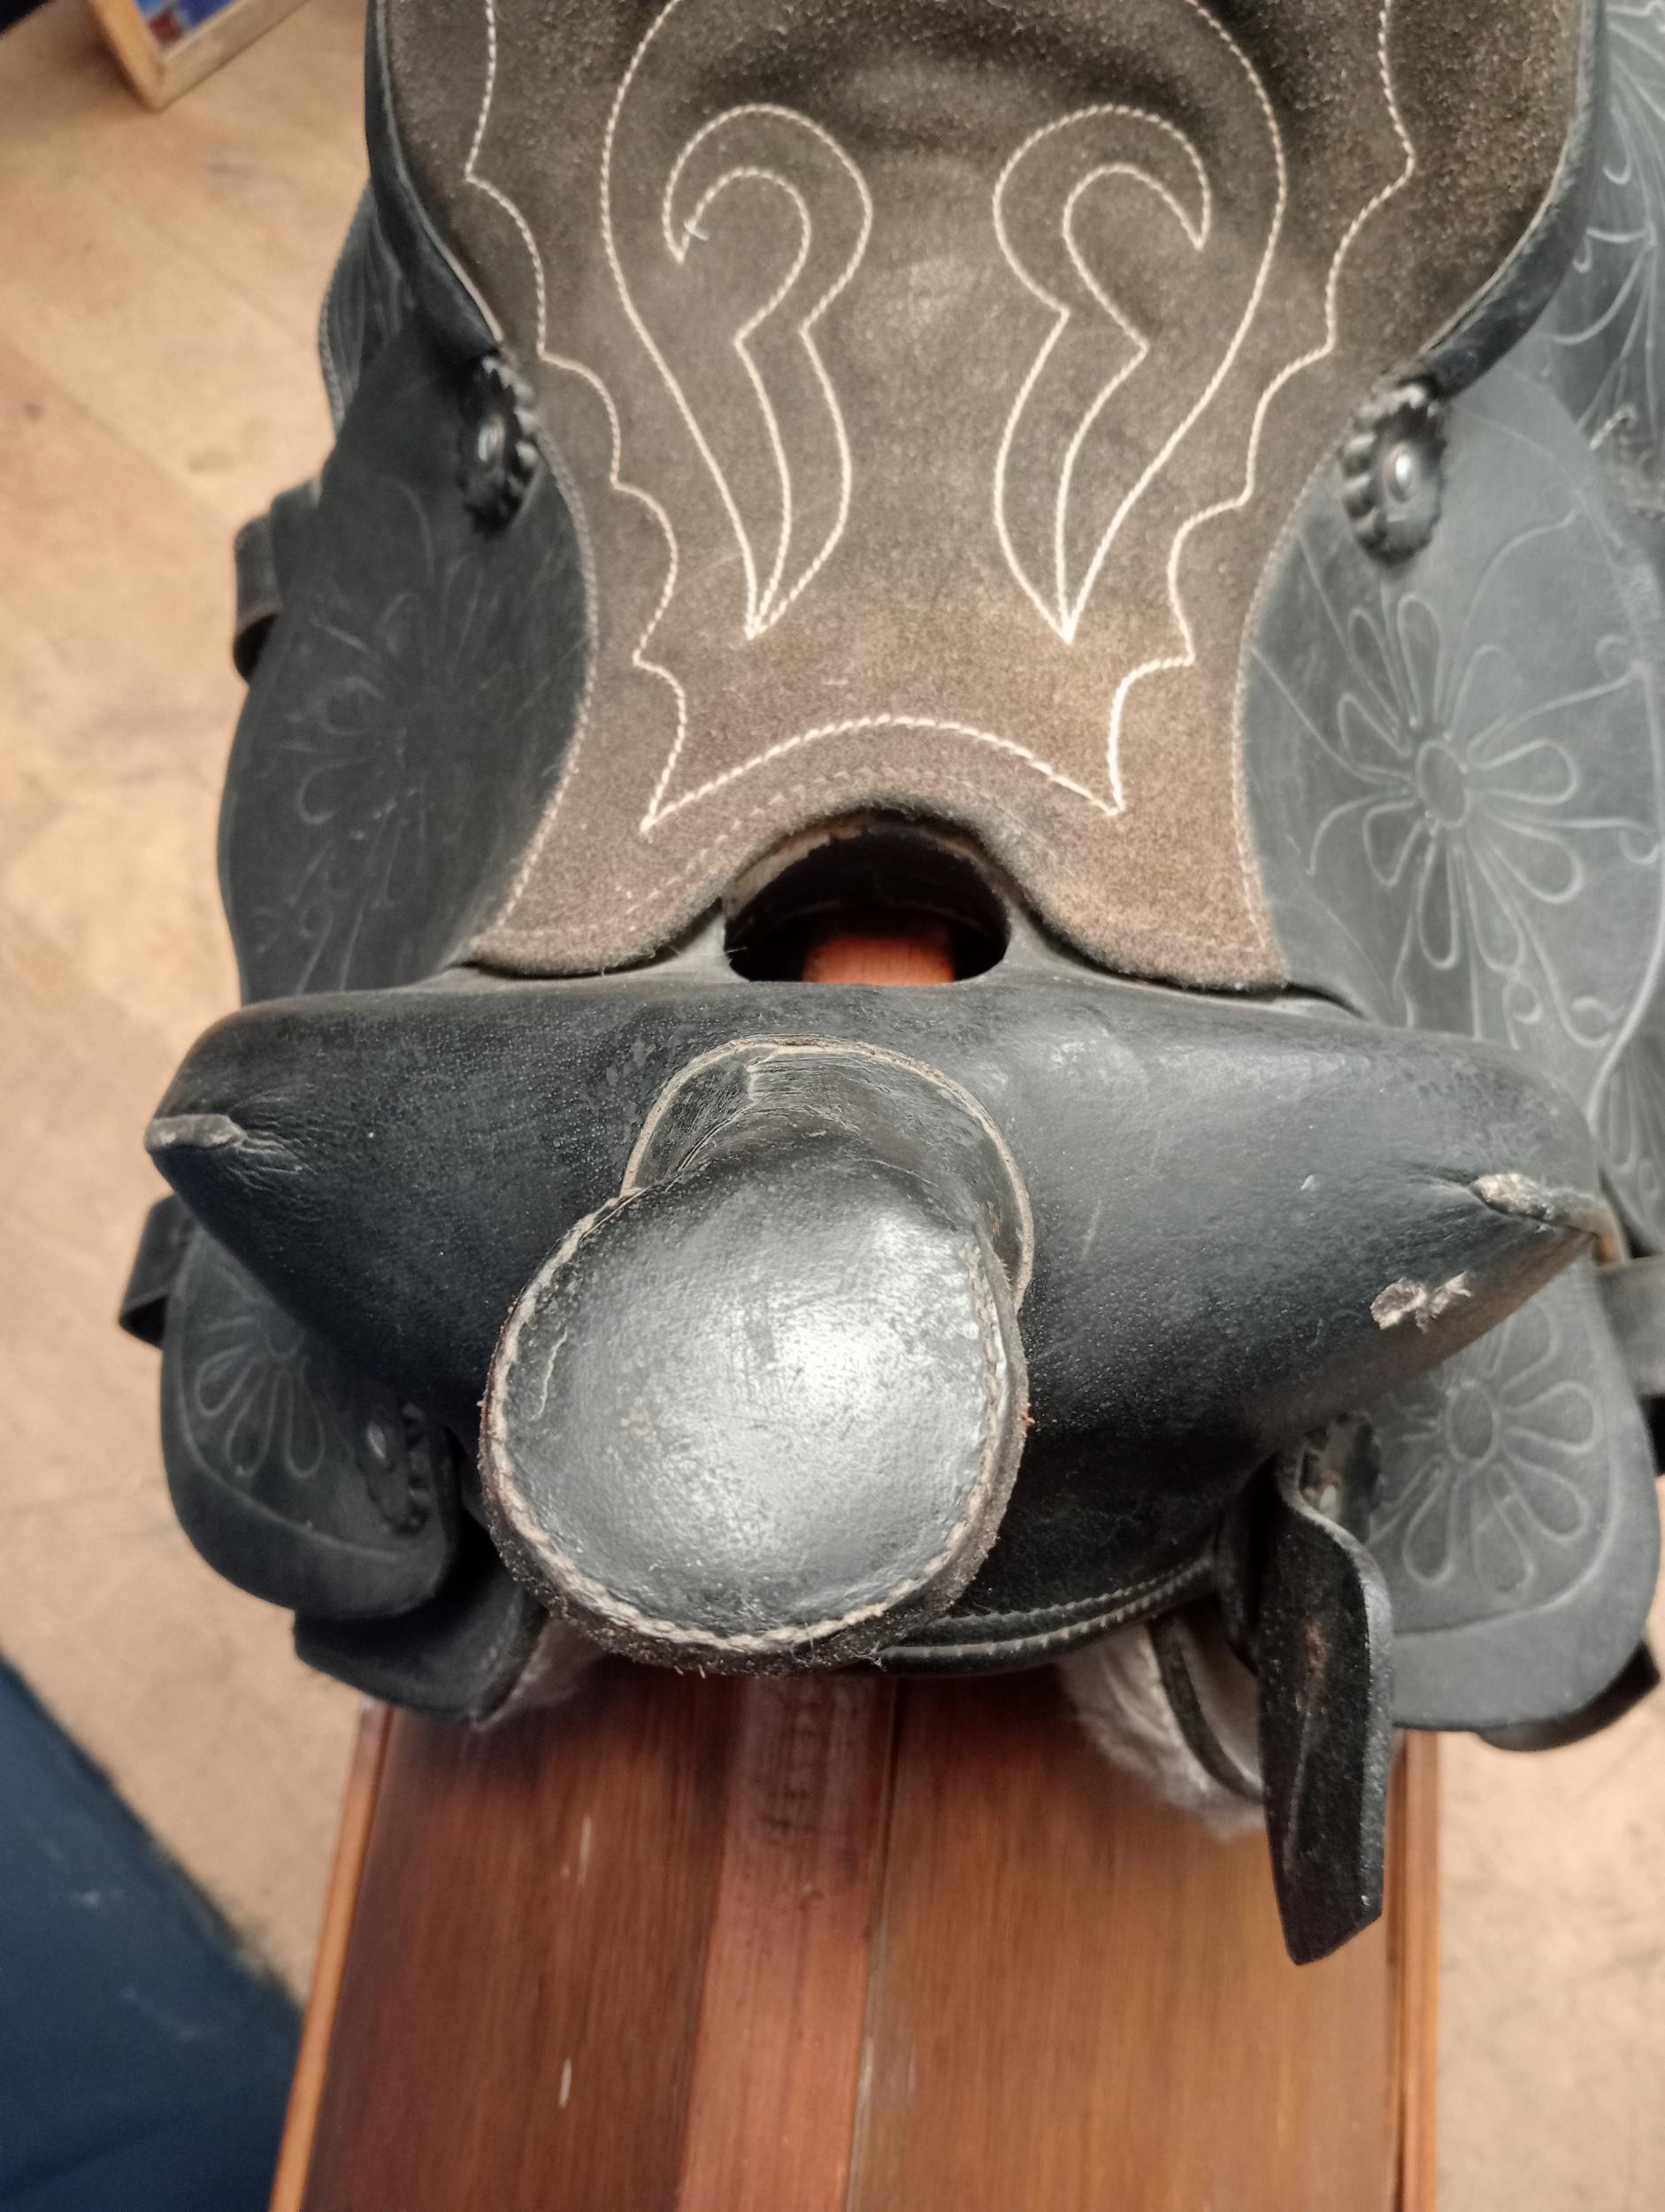 Cowboys leather saddle {H 60cm x W 50cm x D 40cm }. - Image 4 of 5